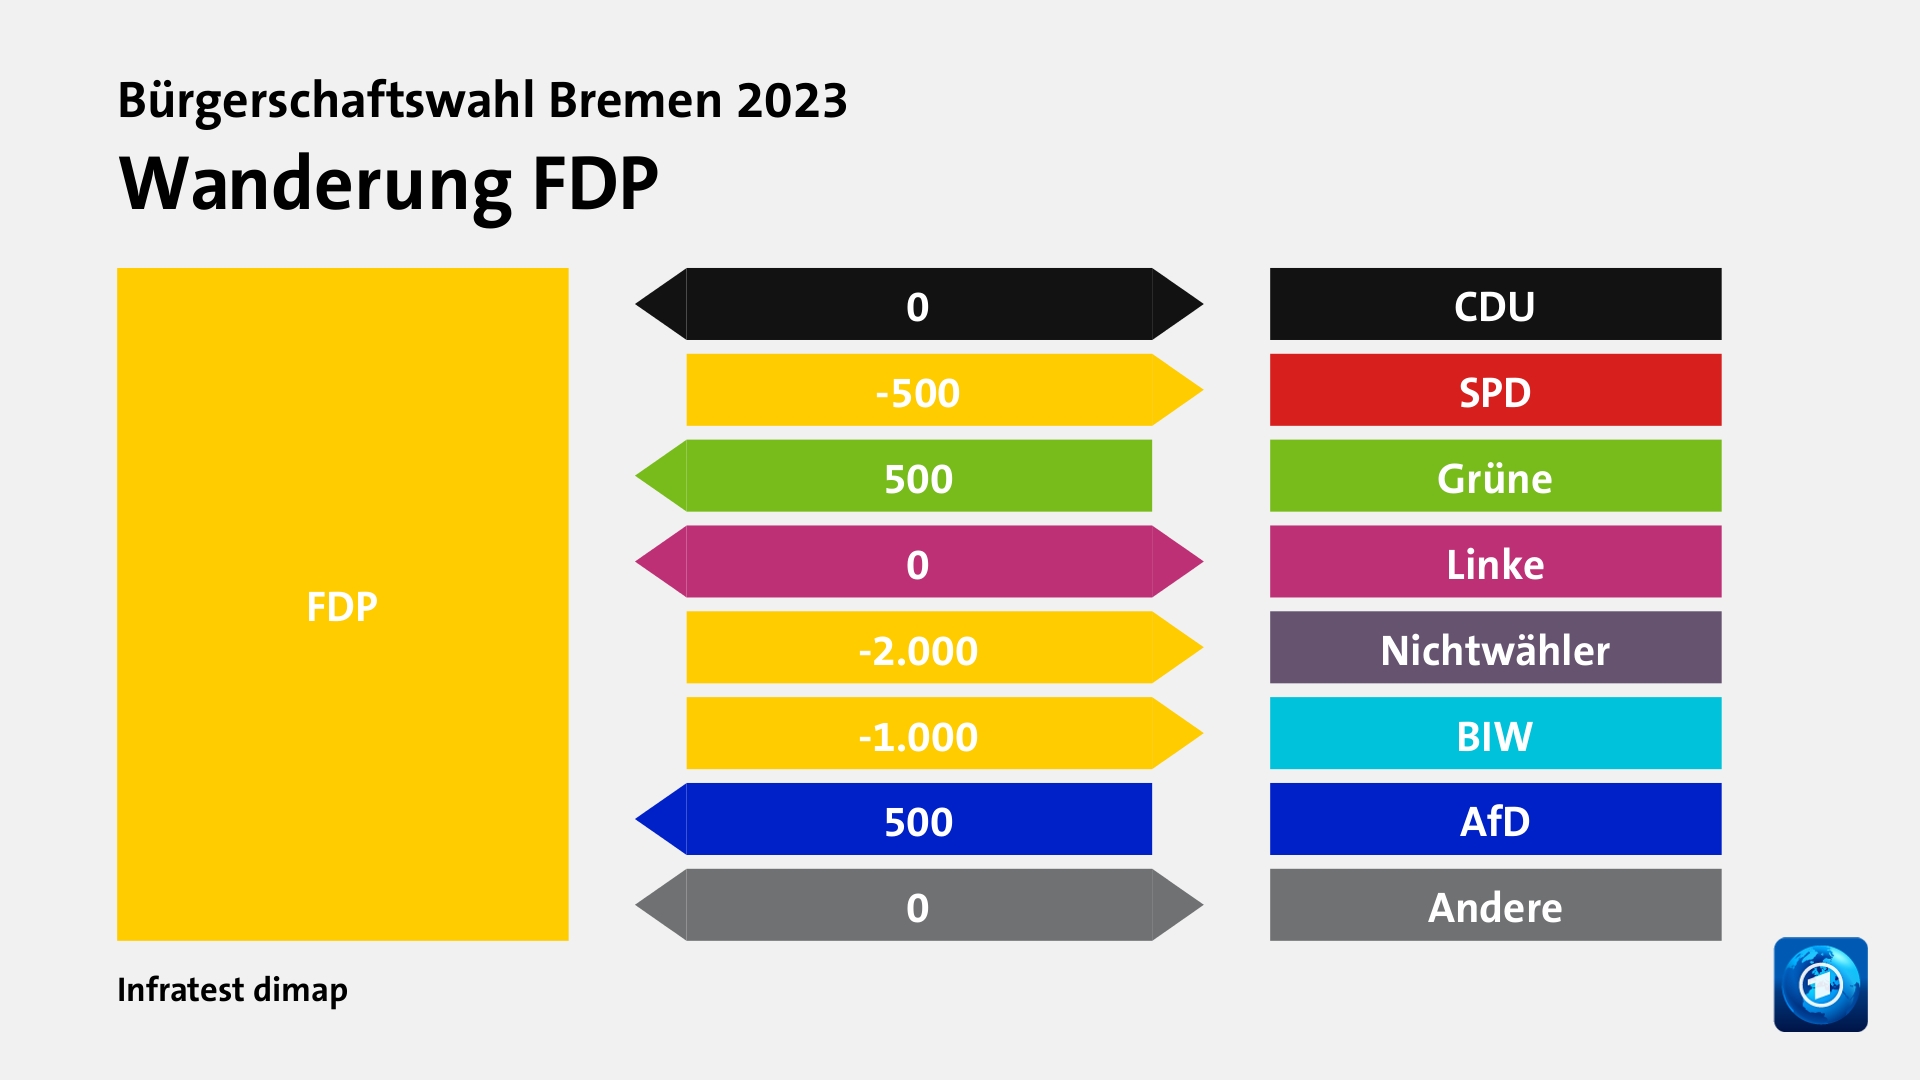 Wanderung FDPzu CDU 0 Wähler, zu SPD 500 Wähler, von Grüne 500 Wähler, zu Linke 0 Wähler, zu Nichtwähler 2.000 Wähler, zu BIW 1.000 Wähler, von AfD 500 Wähler, zu Andere 0 Wähler, Quelle: Infratest dimap